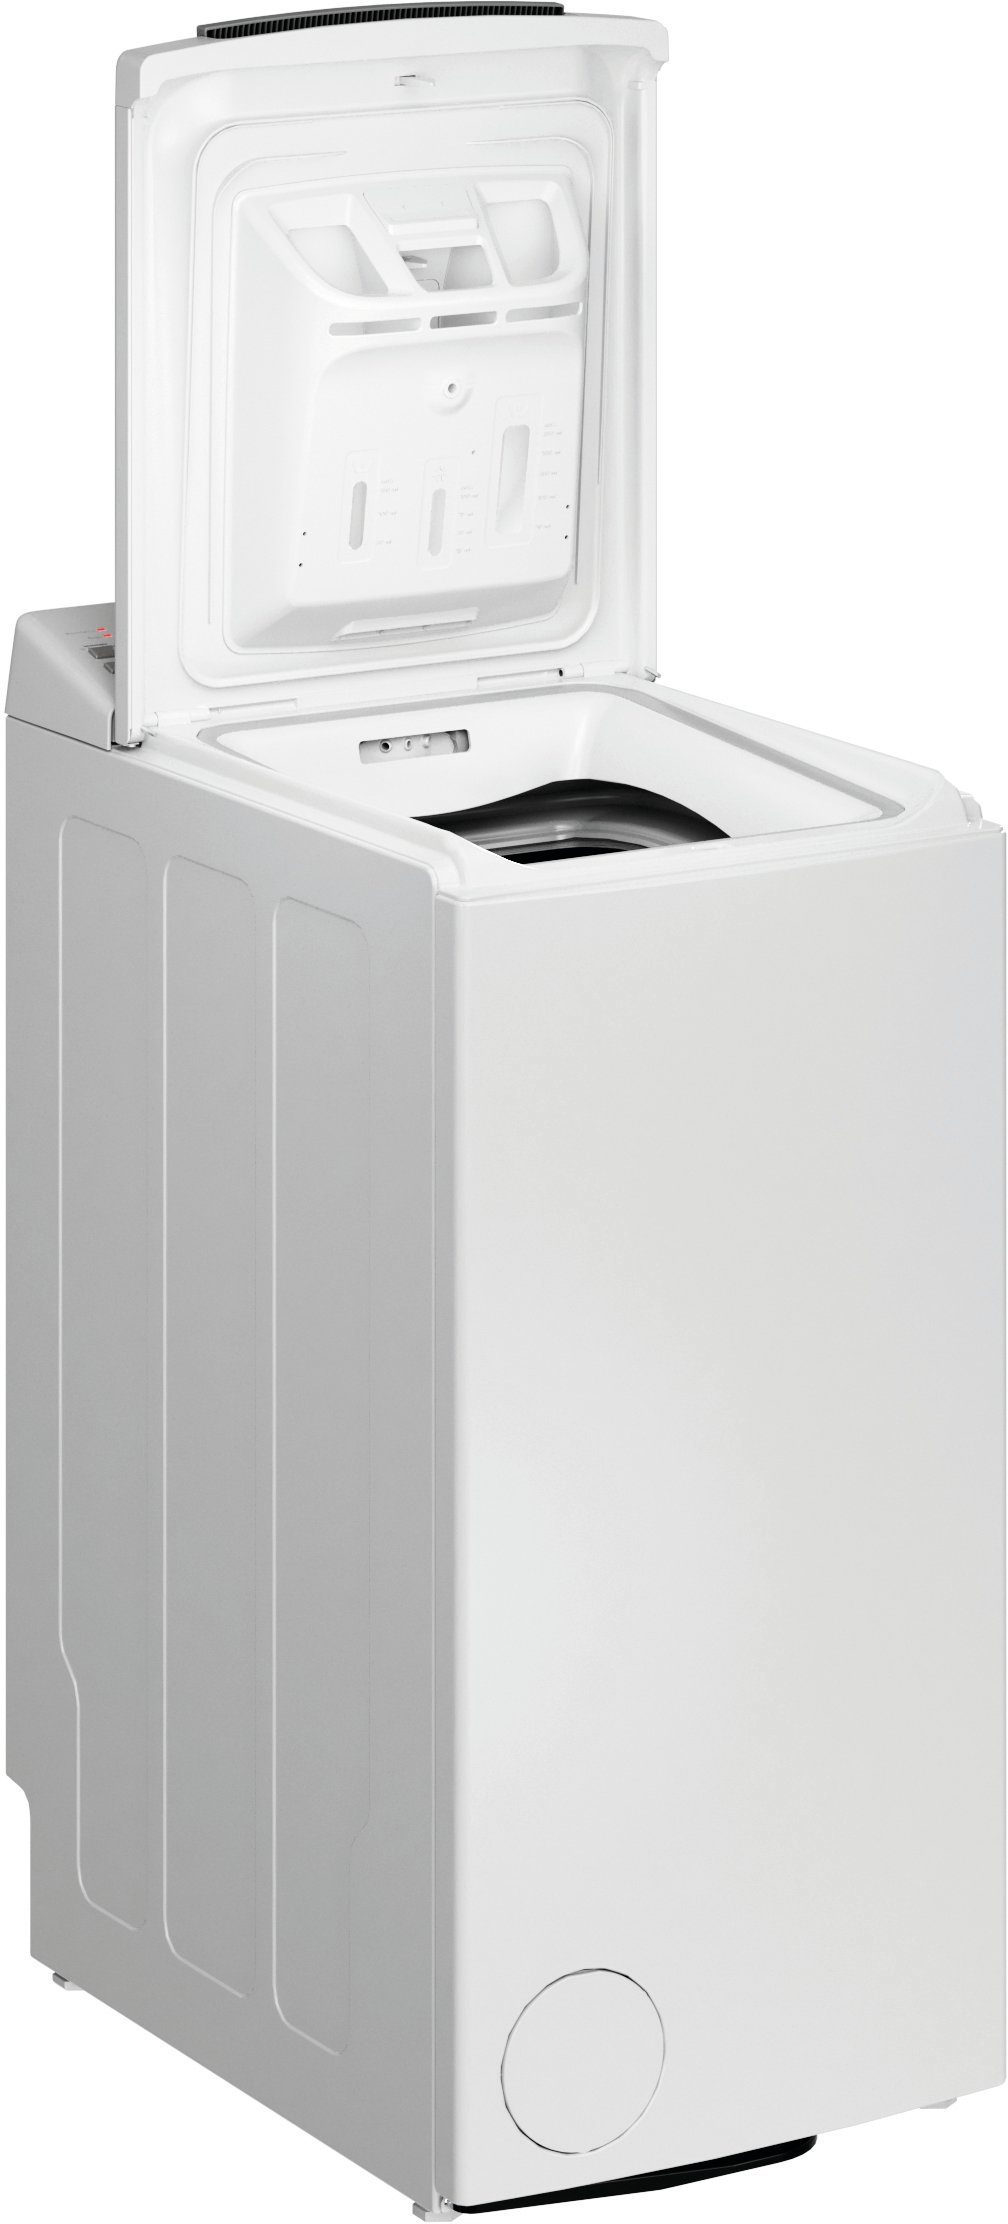 BAUKNECHT Waschmaschine Toplader WAT 1200 U/min kg, C, 6 6313